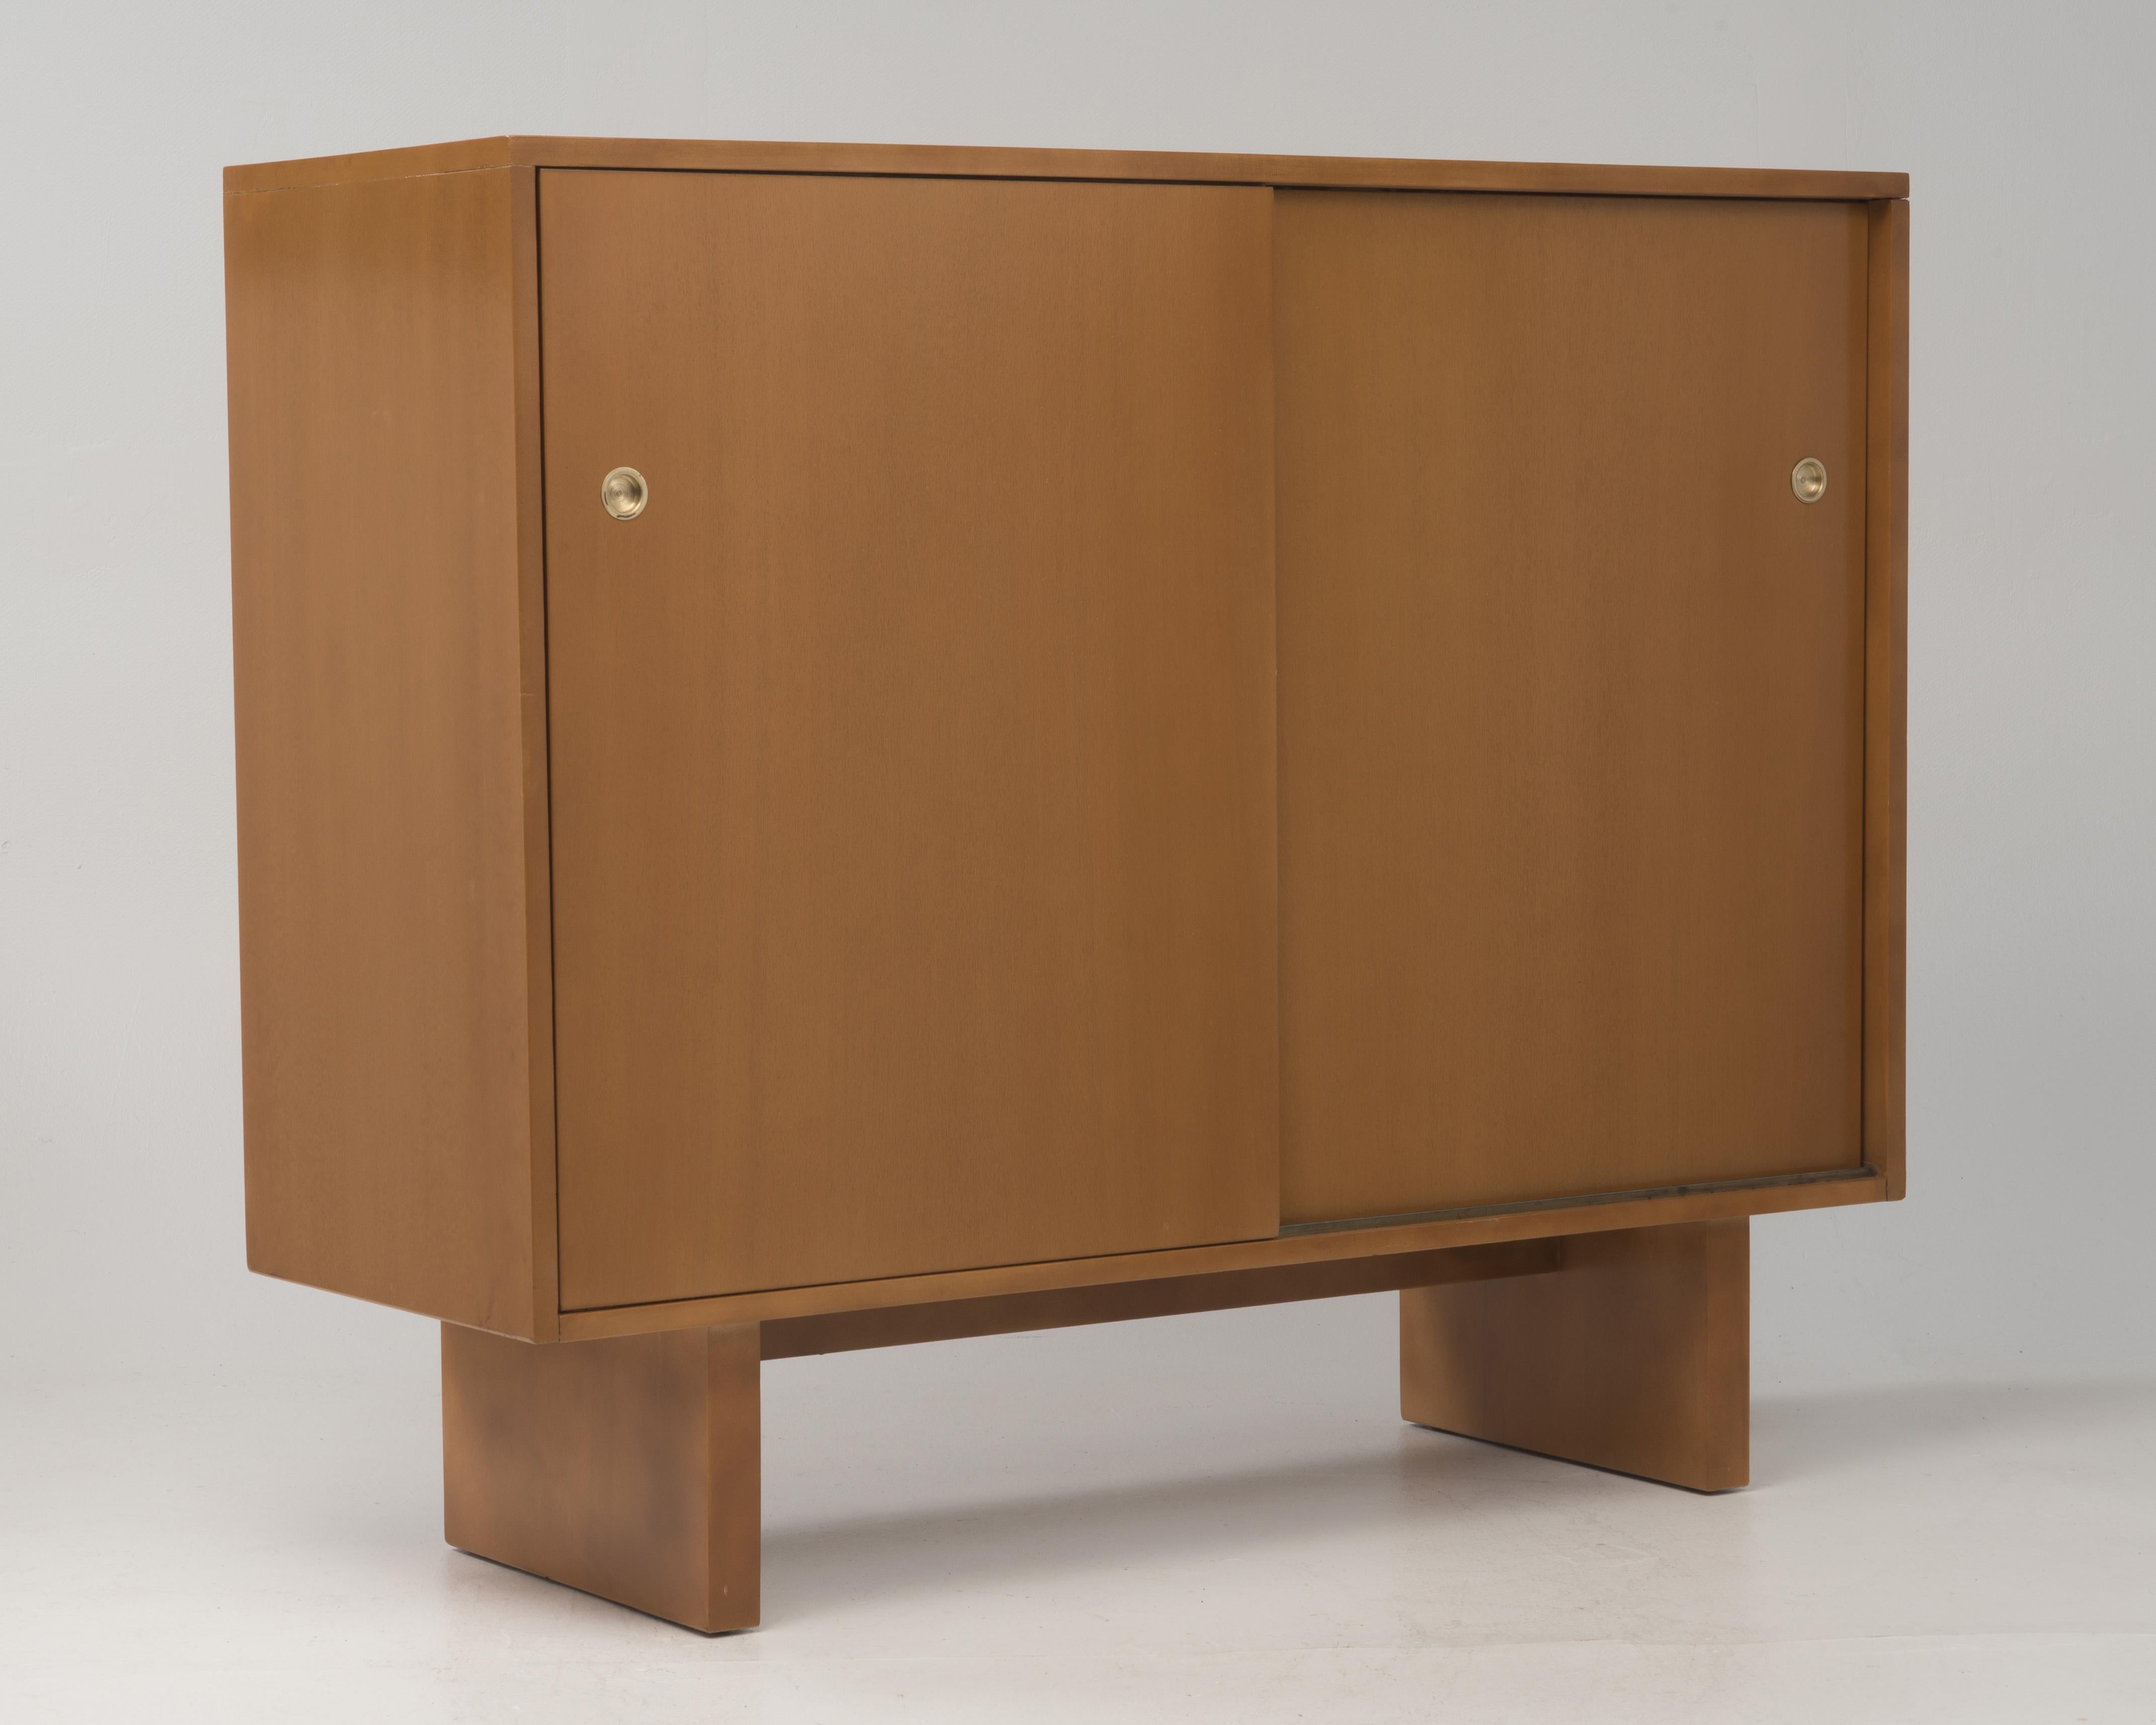 Early and rare men's dresser designed by T.H.Robsjohn Gibbings for Widdicomb. Measures: 51.5